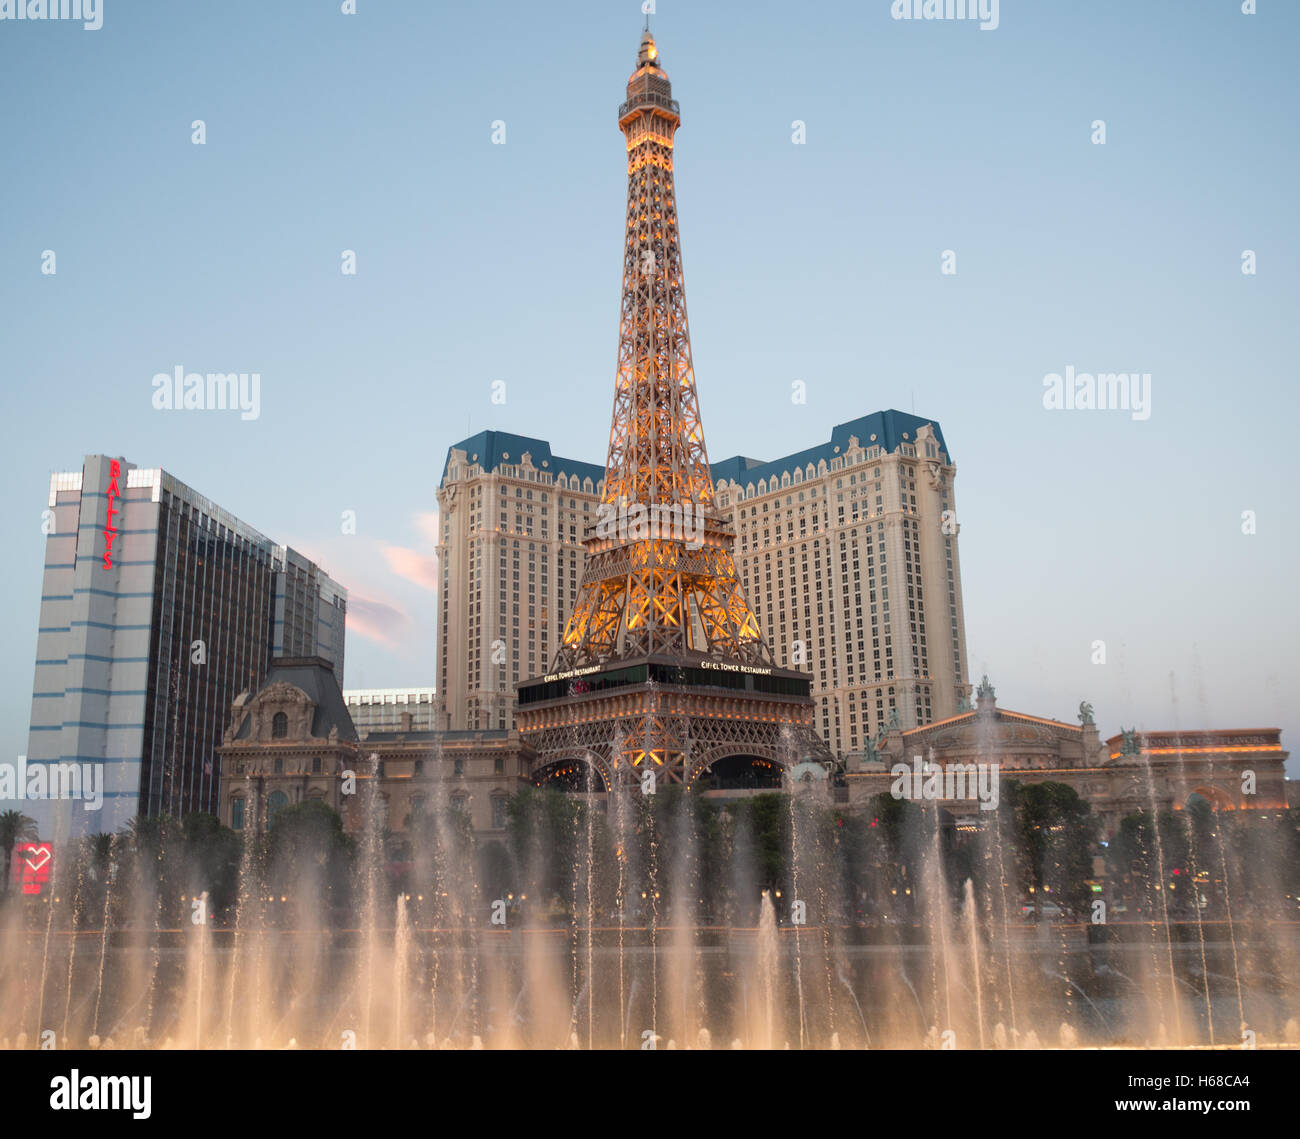 Bellagio Hotel and Casino fontane spettacolo di luci con il Paris Las Vegas Torre Eiffel in background Foto Stock